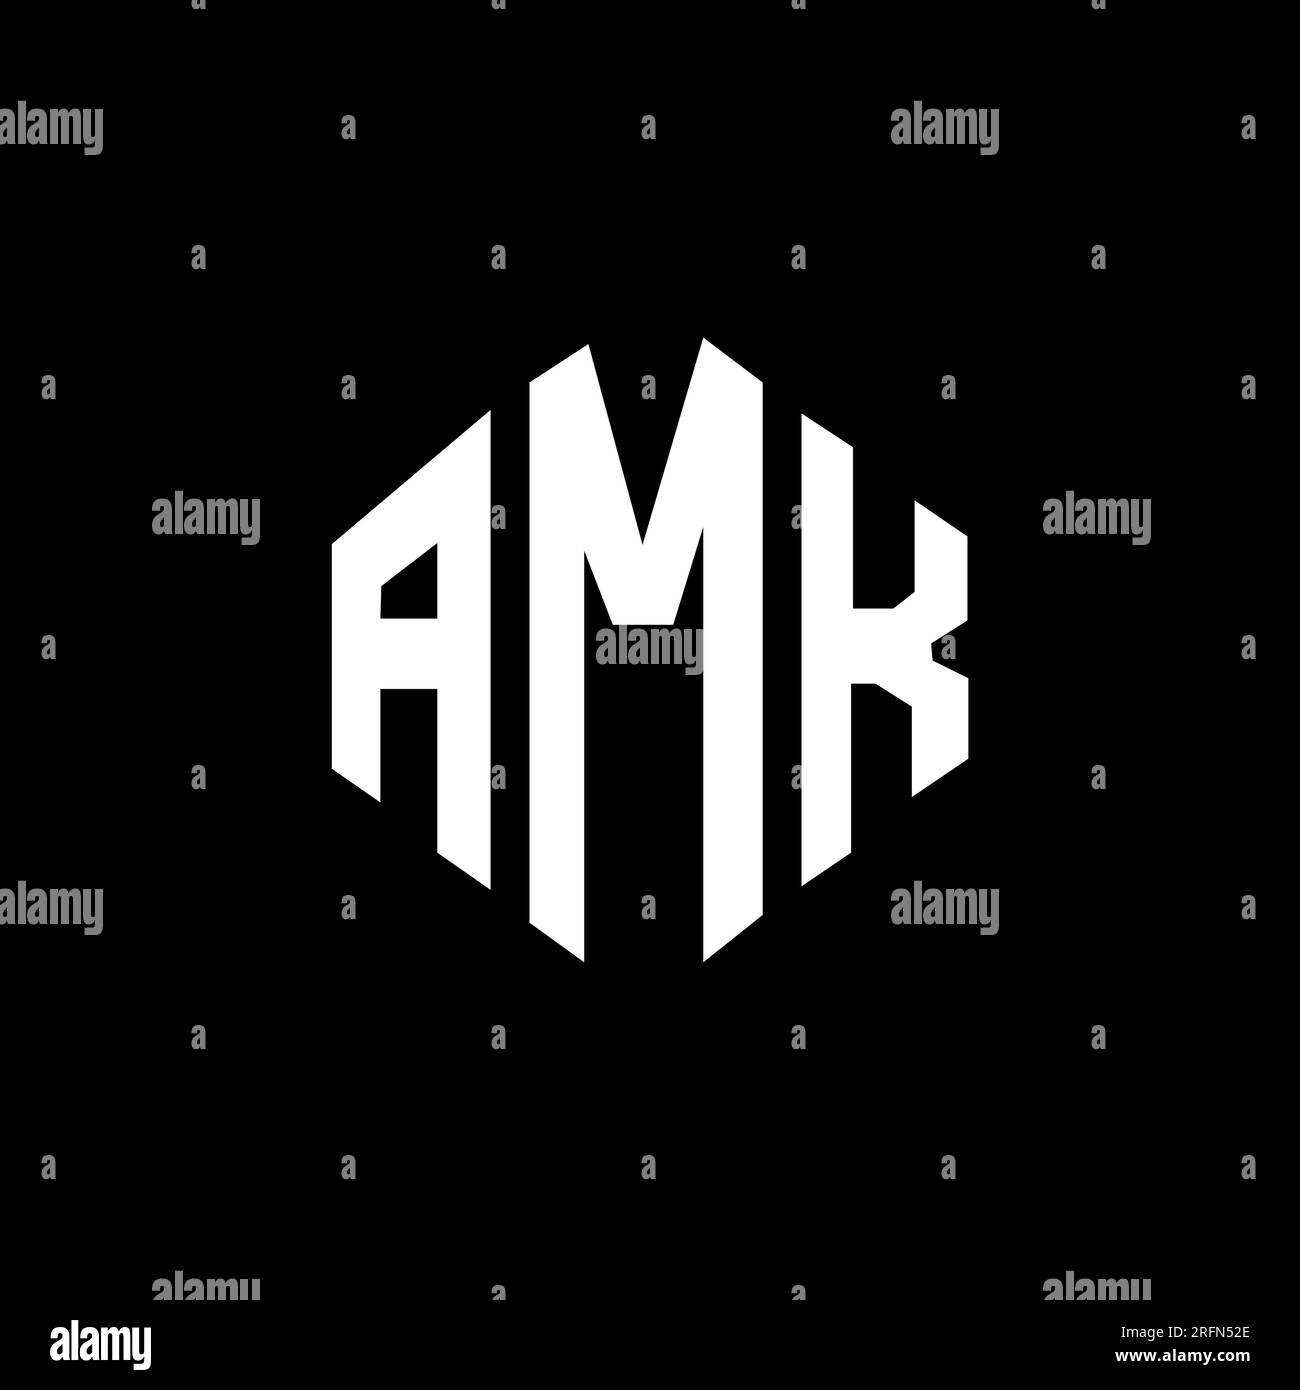 Amk Logo Vector Graphic Branding Letter Stock Vector (Royalty Free)  417190234 | Shutterstock